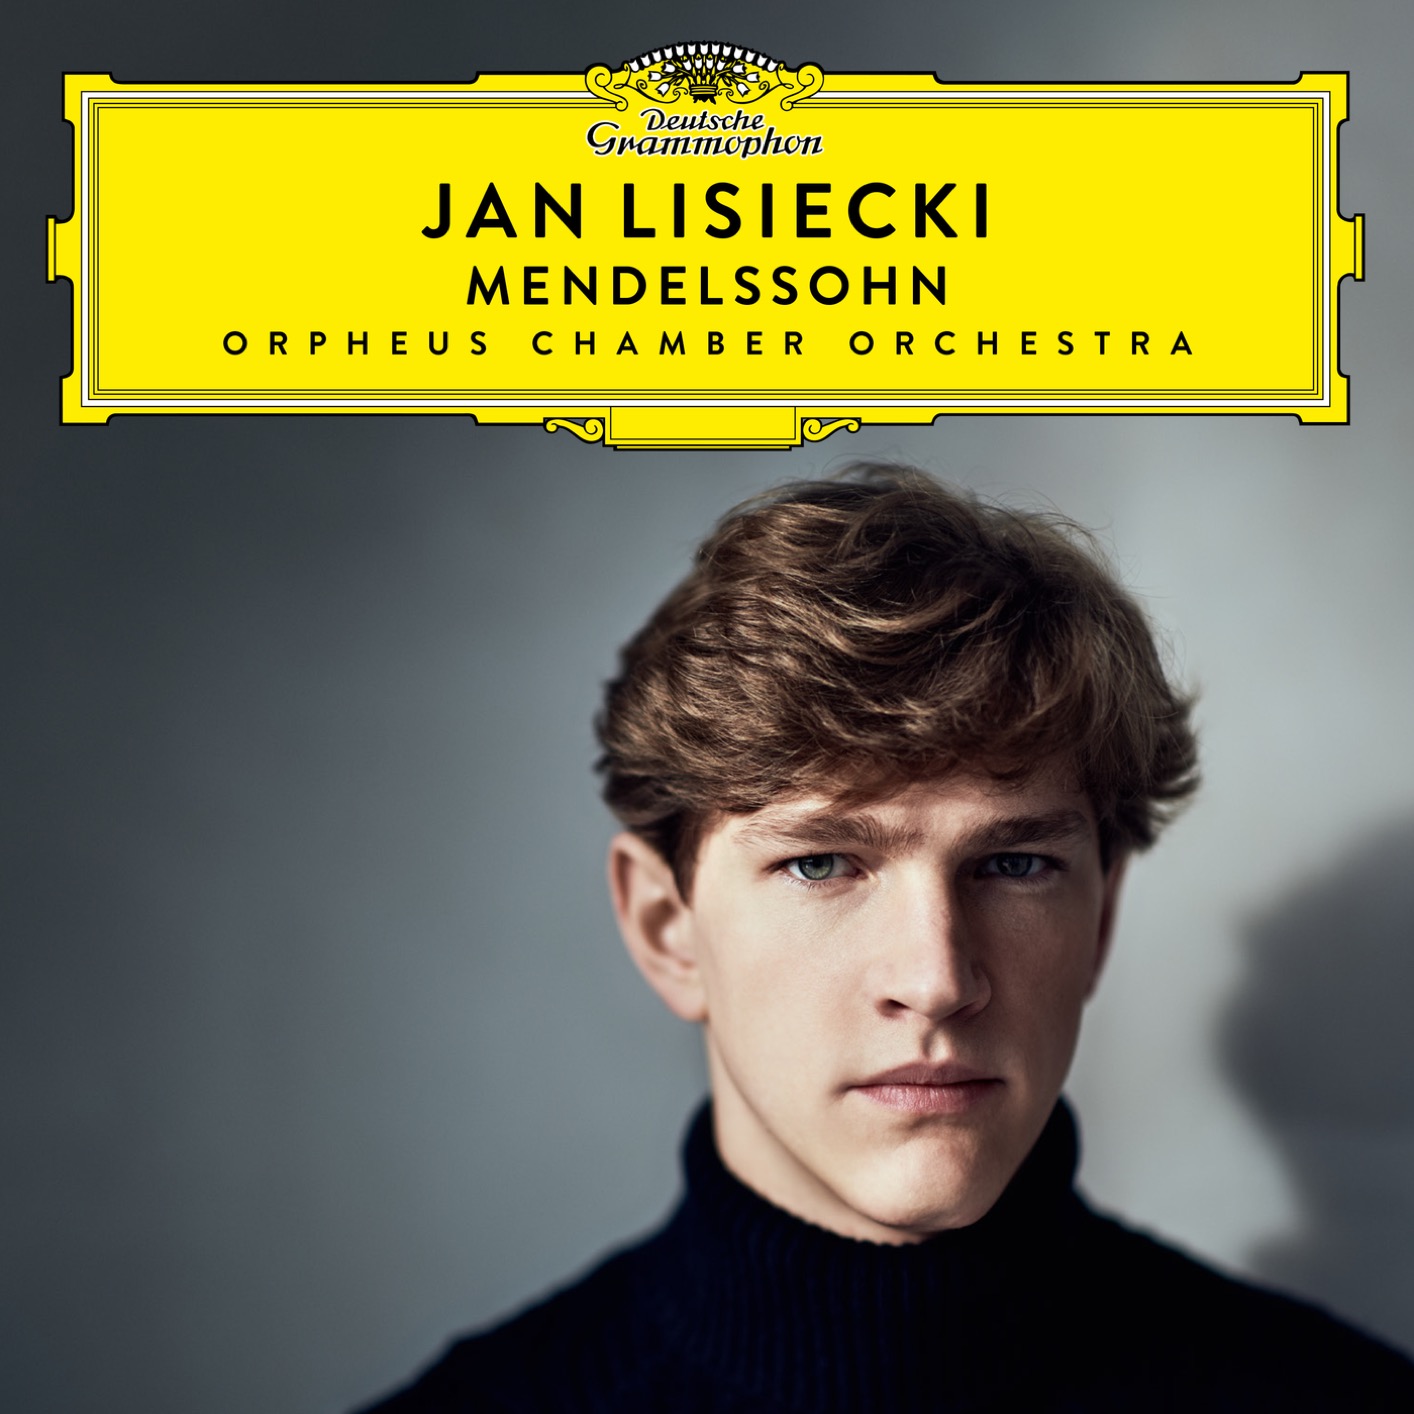 Jan Lisiecki & Orpheus Chamber Orchestra - Mendelssohn (2019) [FLAC 24bit/96kHz]